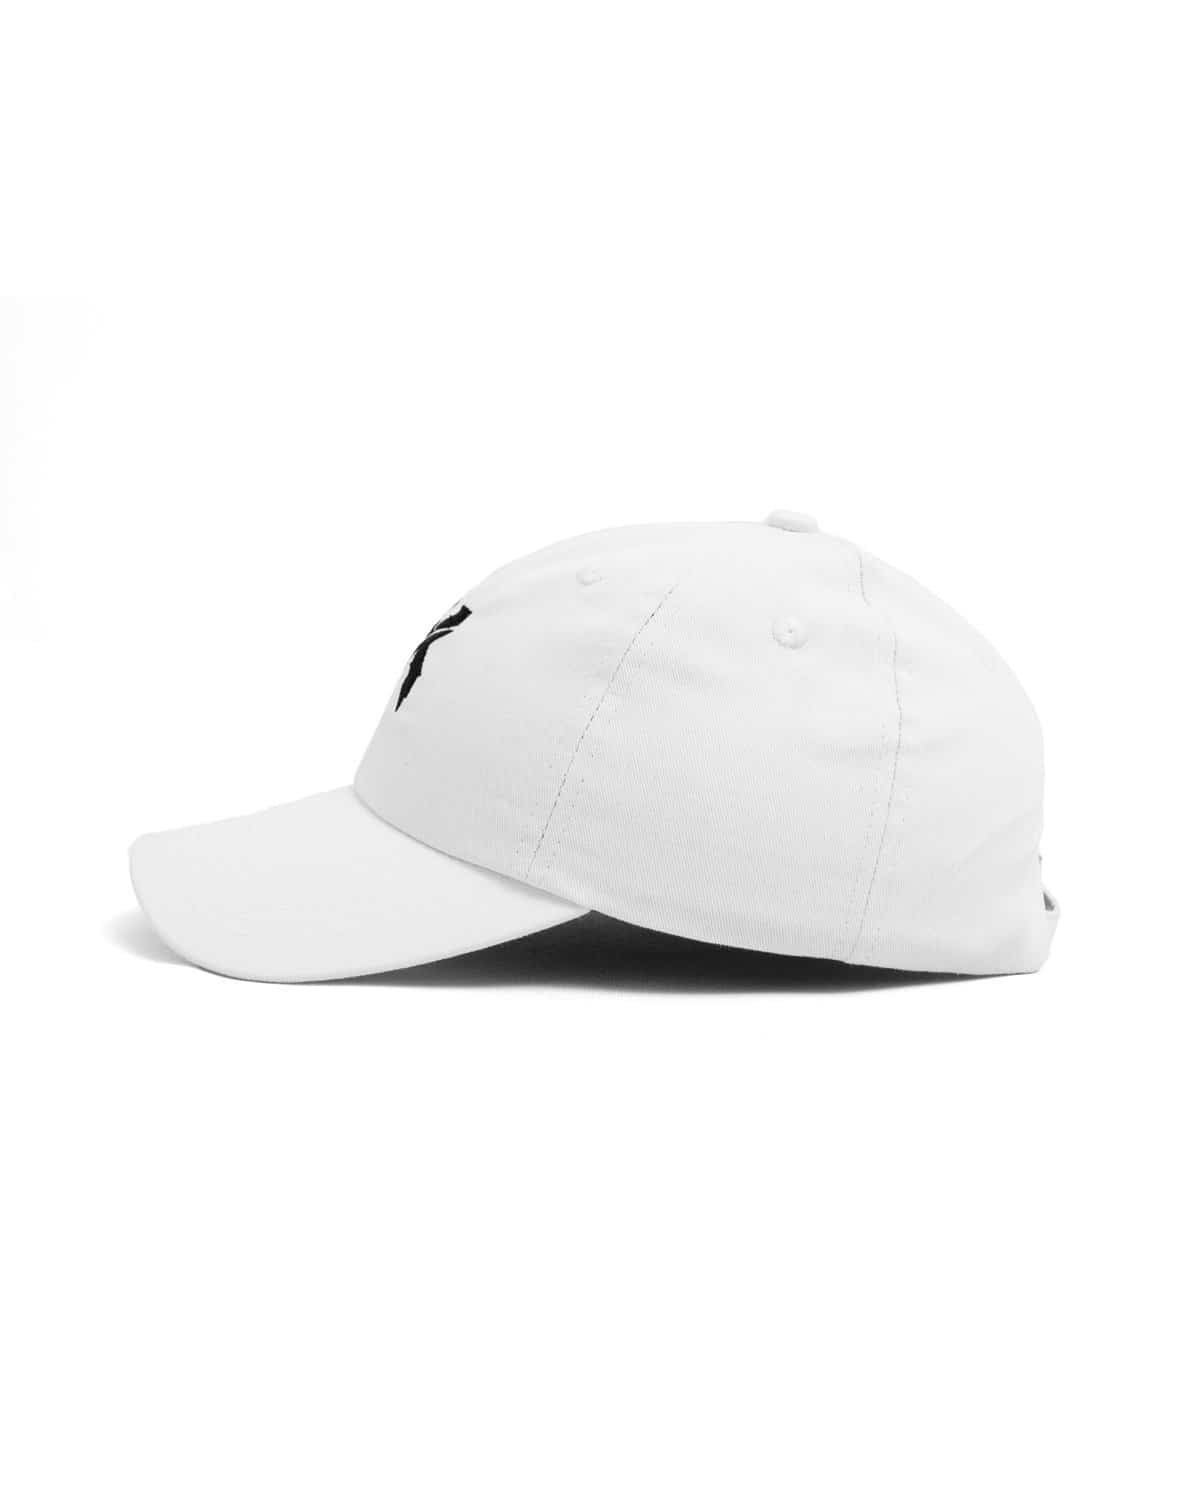 Excision 'Sliced' Logo Dad Hat - White/Black